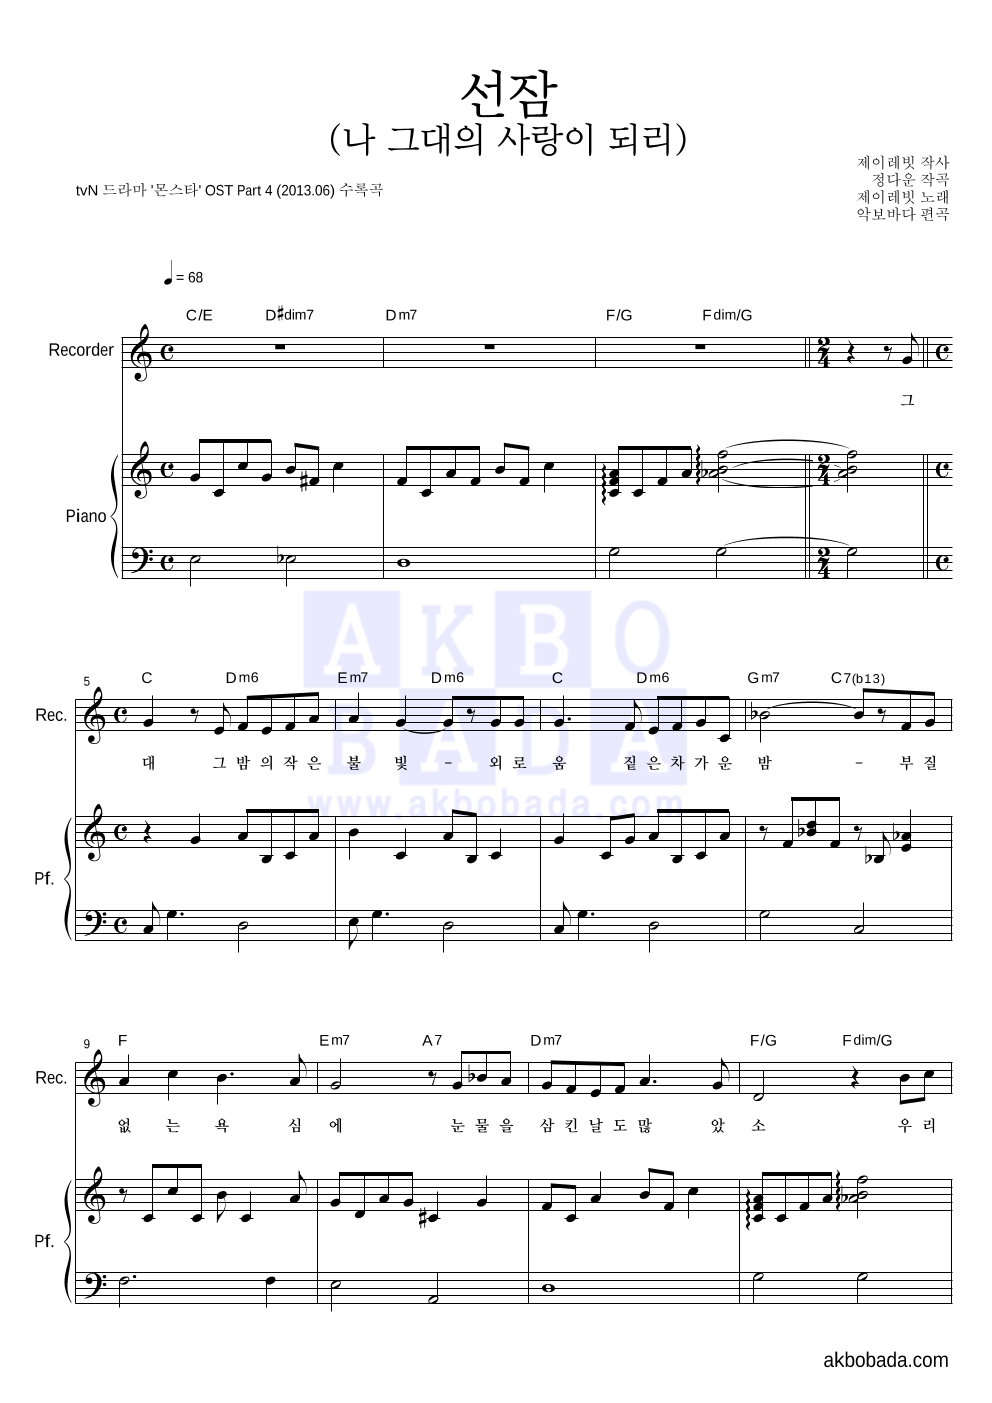 제이레빗 - 선잠 (나 그대의 사랑이 되리) 리코더&피아노 악보 